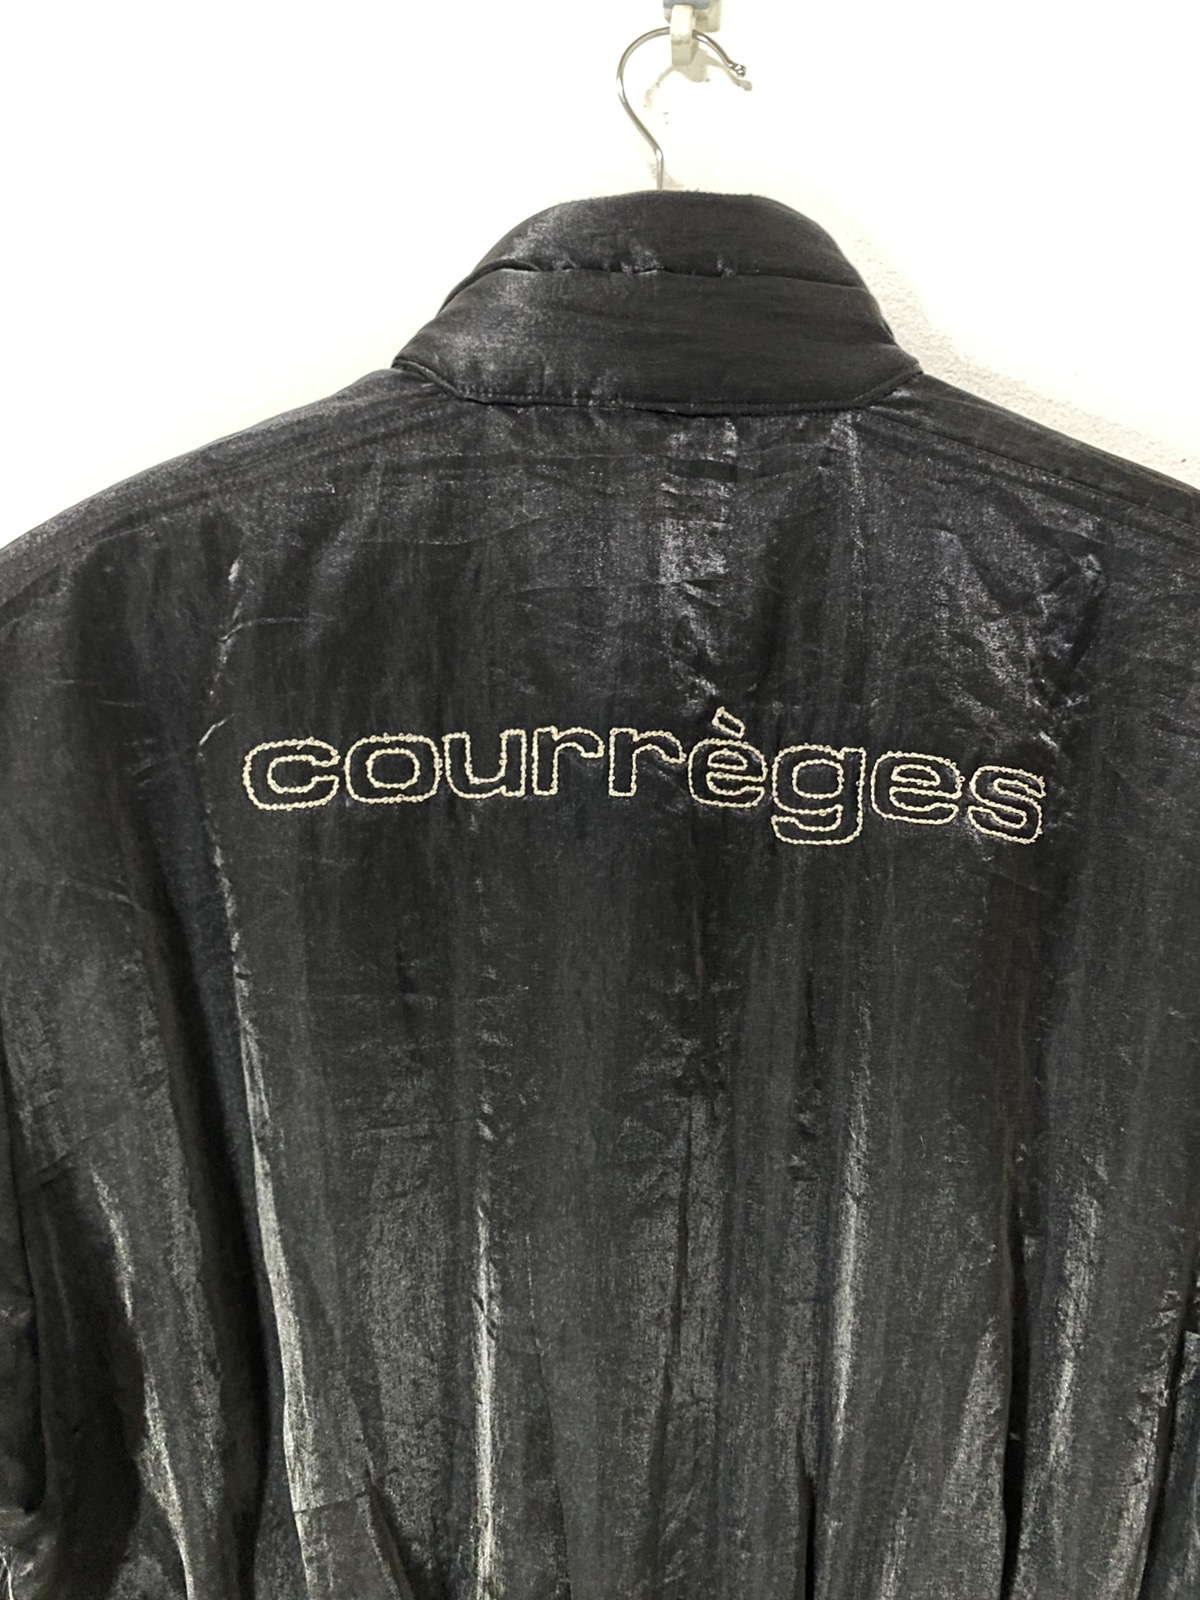 Courreges Jumpsuit Shinning Black Big Logo Design - 3